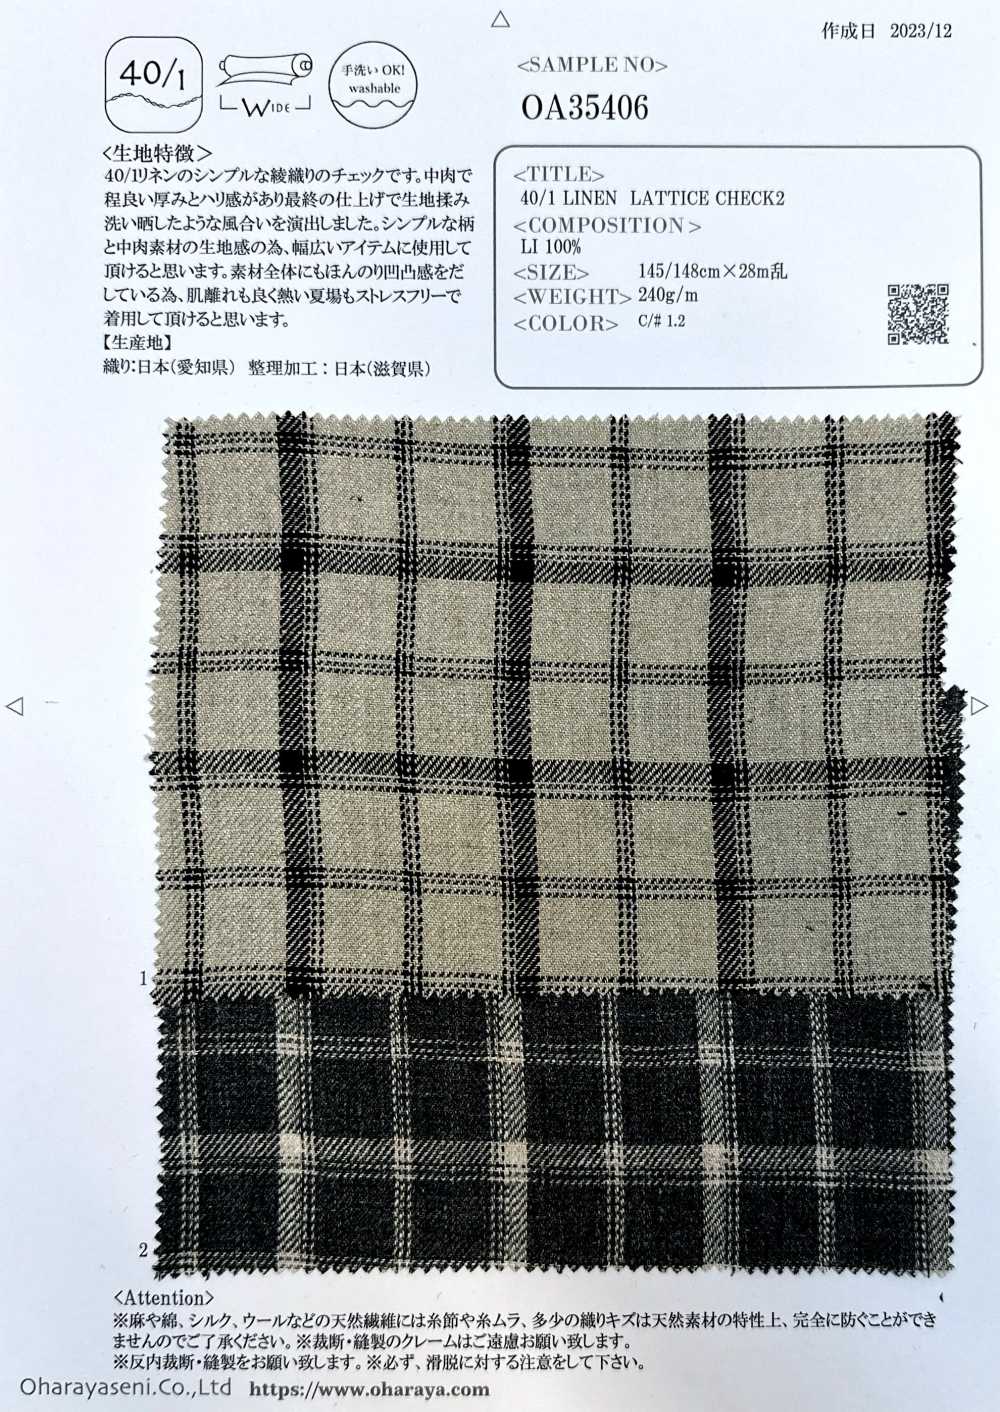 OA35406 CELOSÍA LINO 40/1 CUADRO2[Fabrica Textil] Oharayaseni